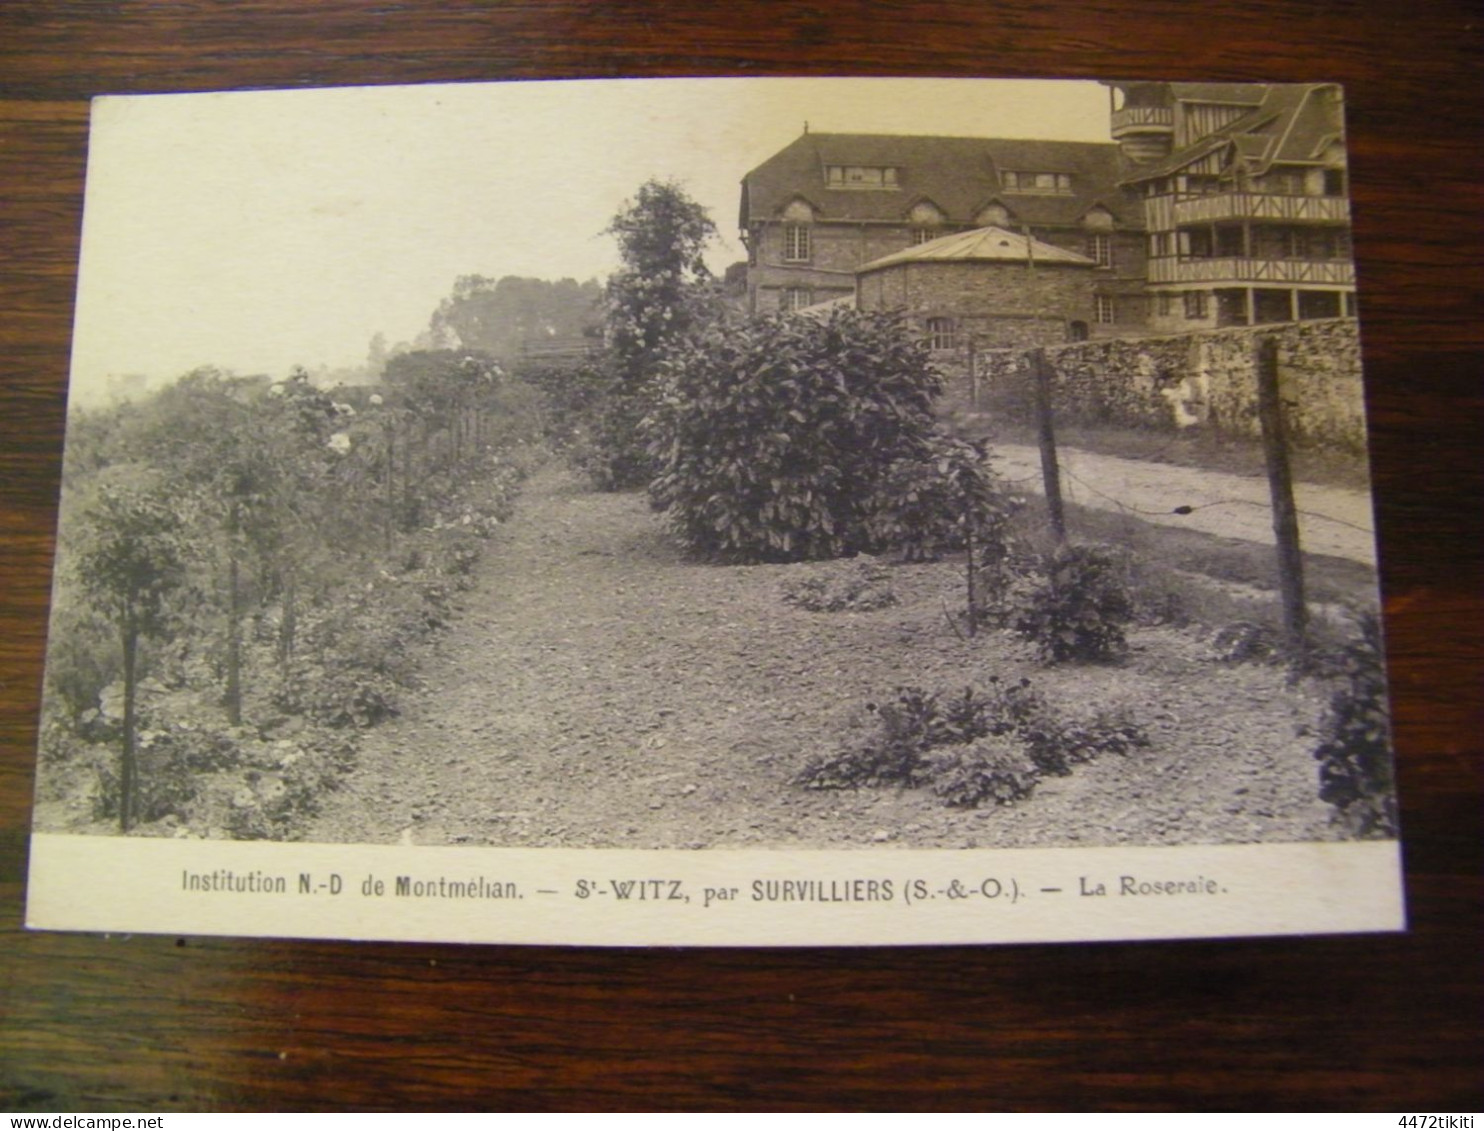 CPA - Survilliers (95) - Institution N.D. Notre Dame De Montmélian - St Witz - La Roseraie -1920 - SUP (HP 26) - Survilliers